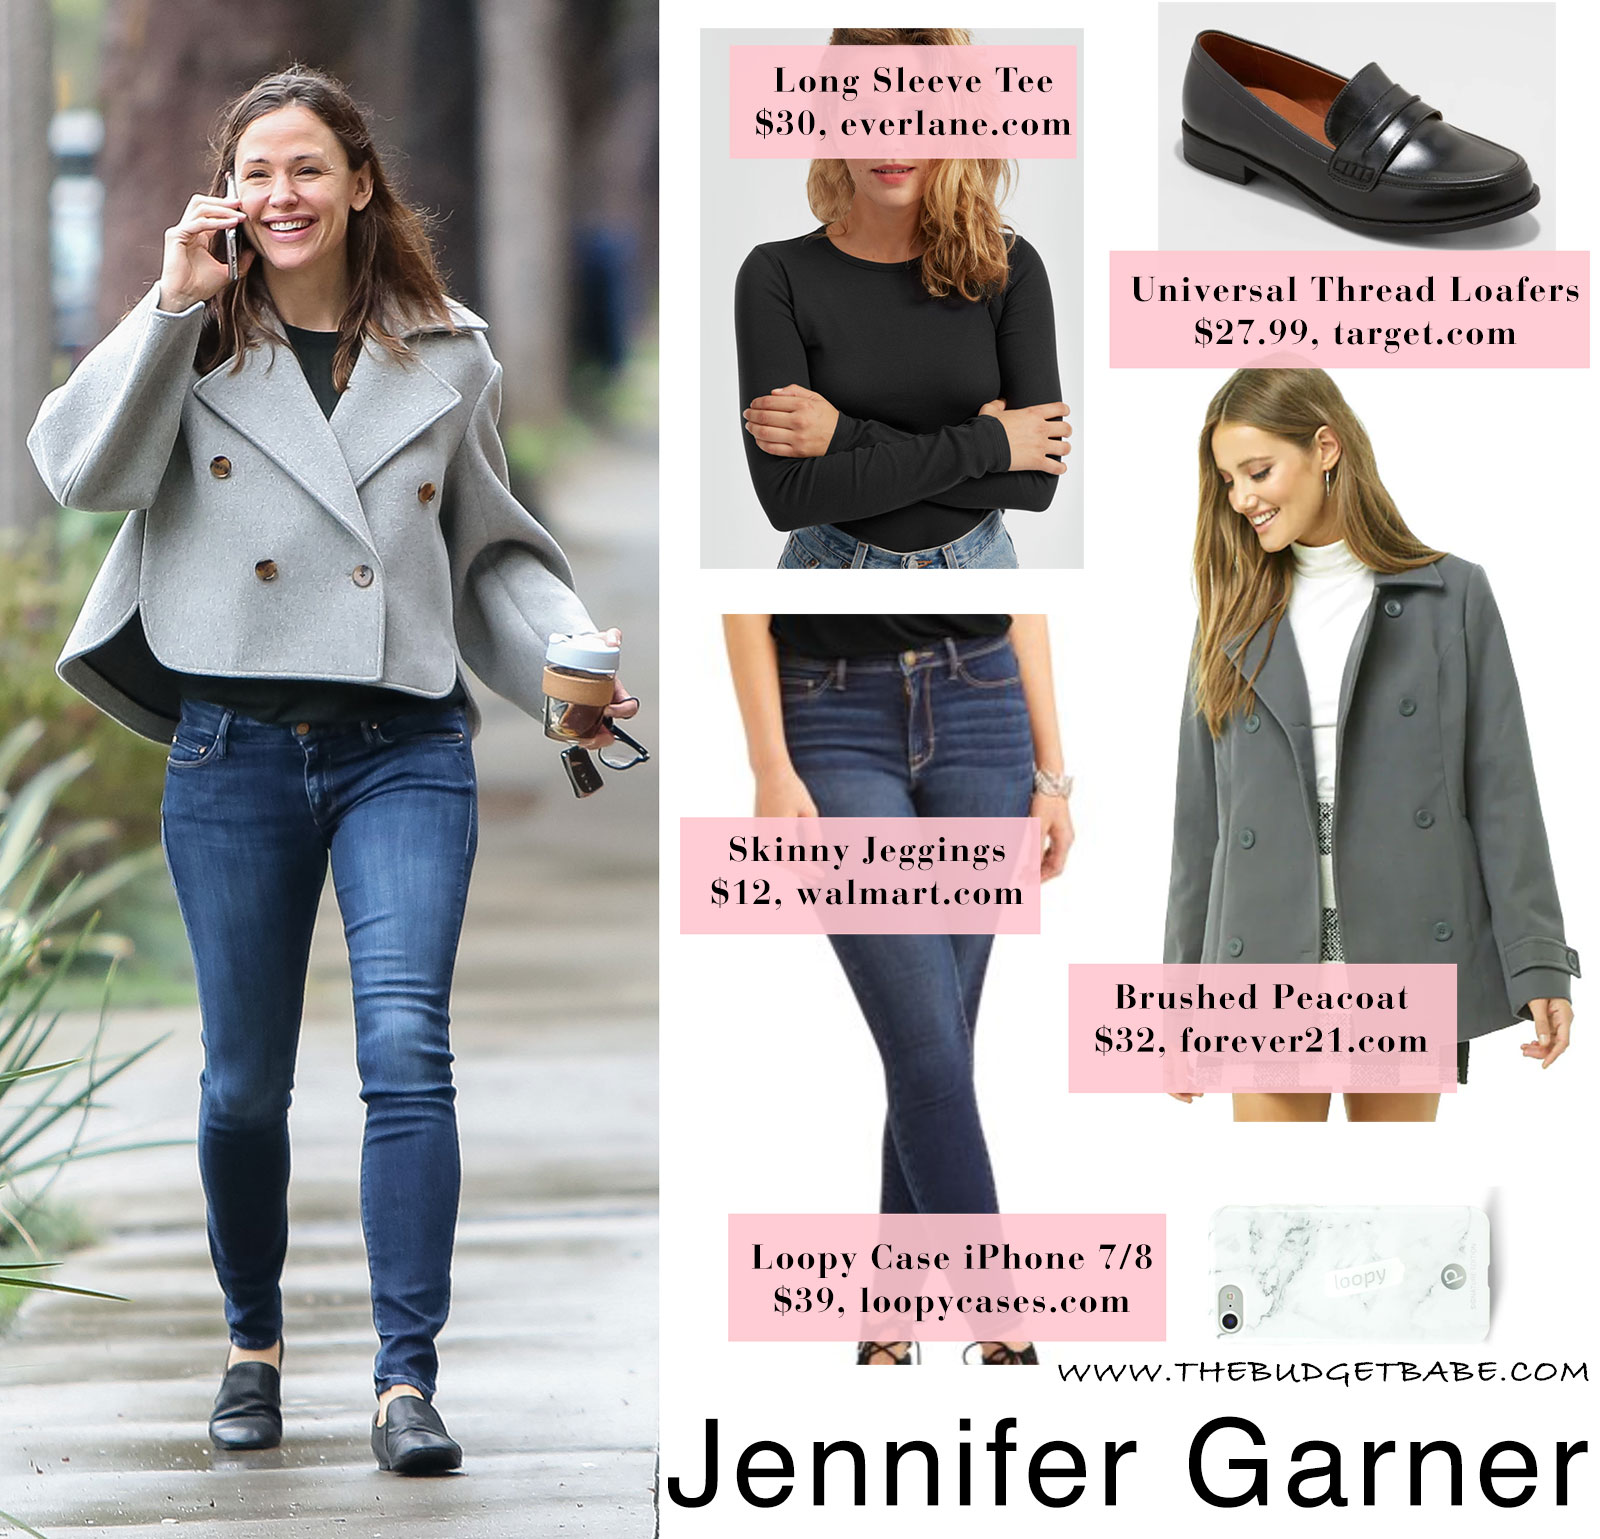 Jennifer Garner's moto jacket look for less